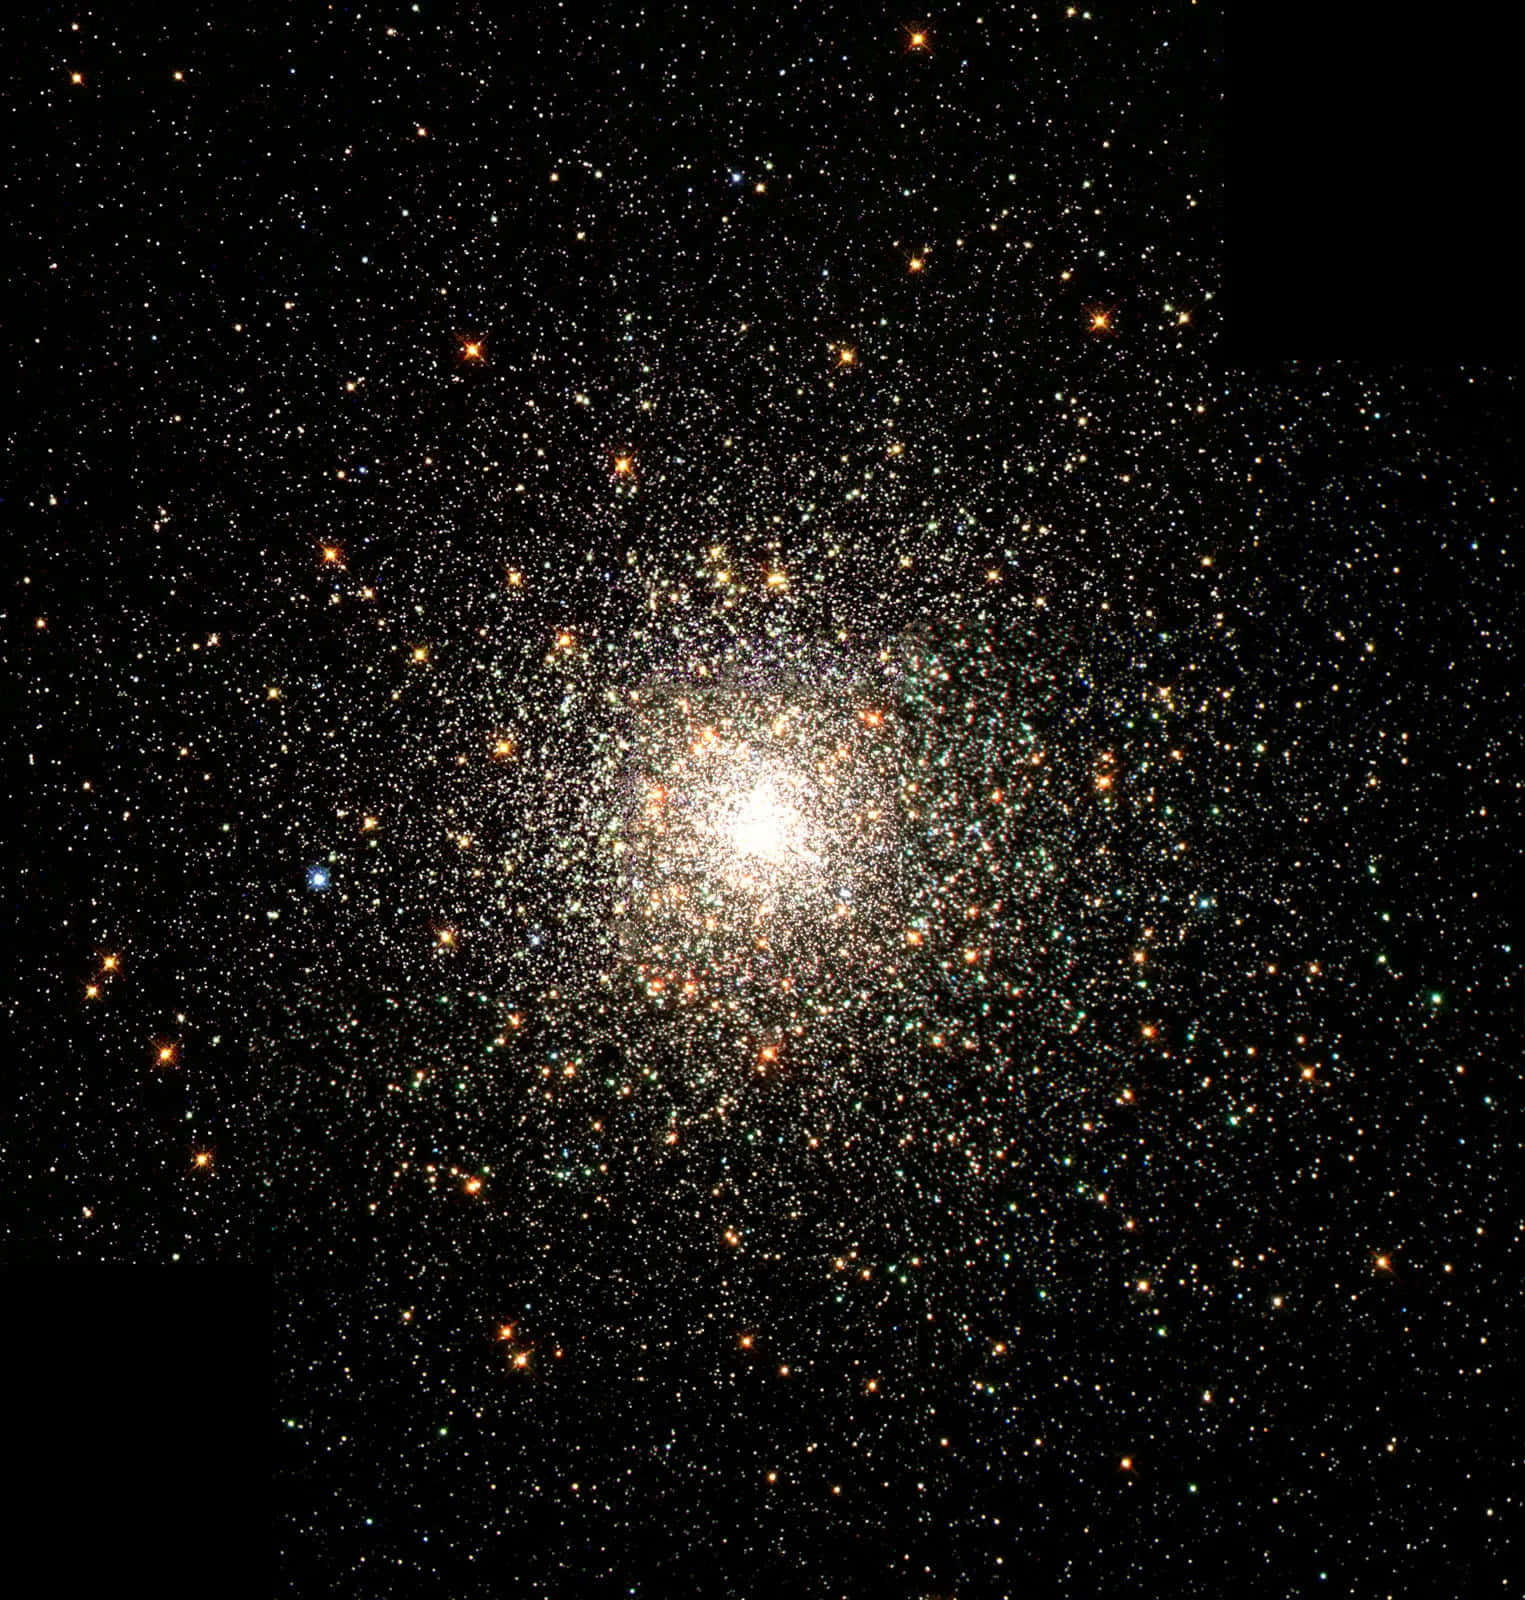 Imagende Un Cúmulo Globular De Estrellas En El Espacio